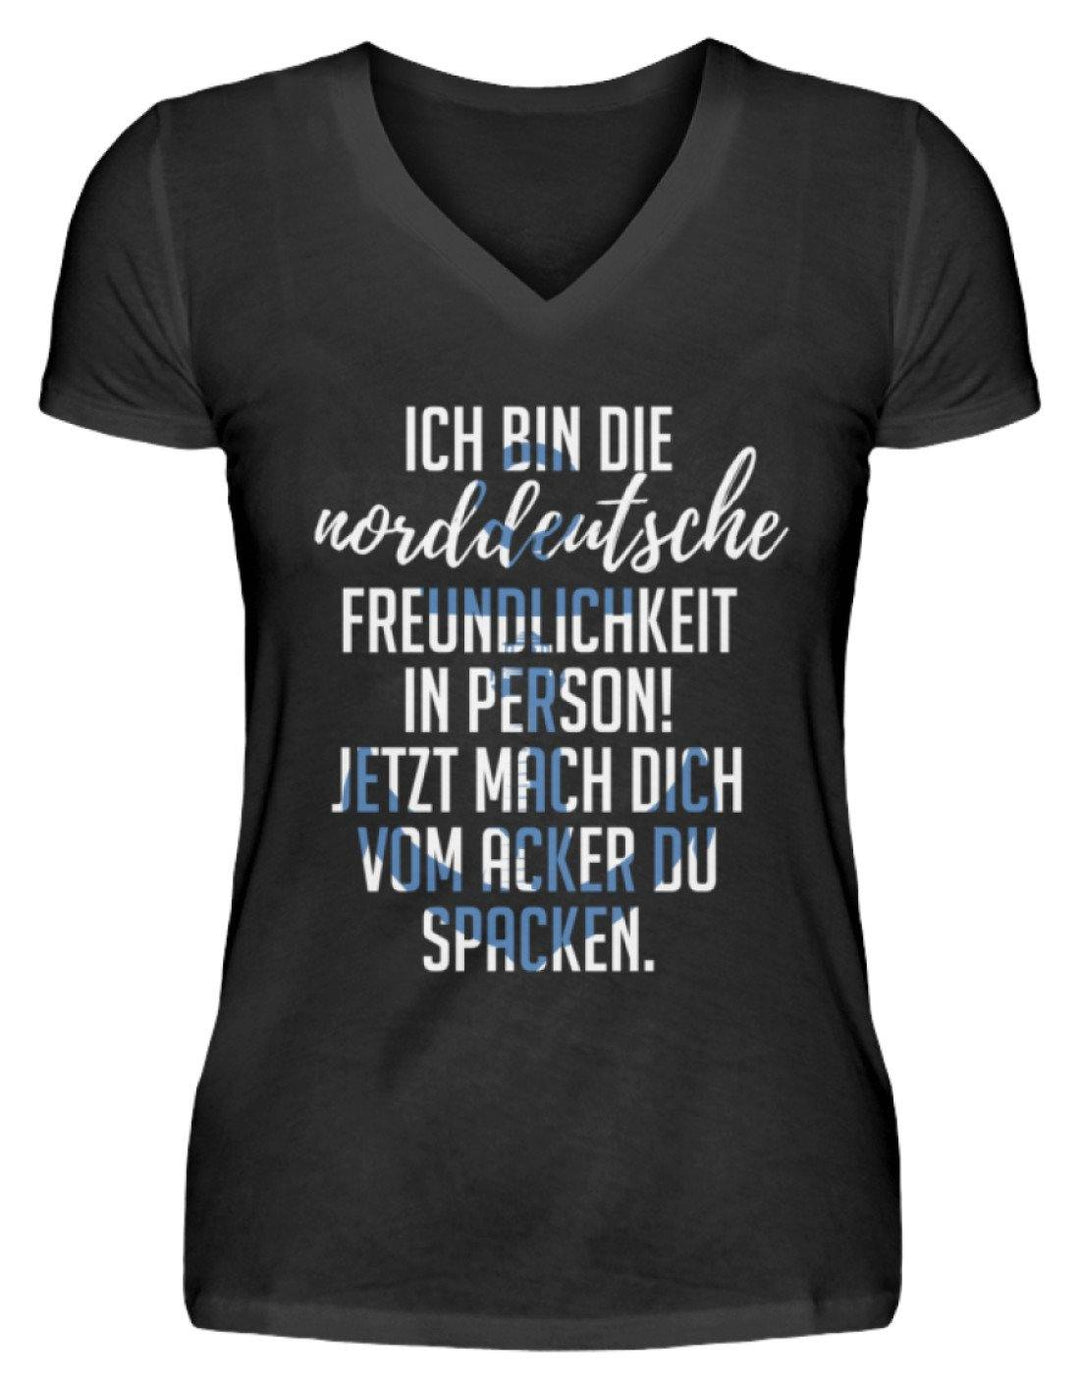 Norddeutsche Freundlichkeit  - V-Neck Damenshirt - Words on Shirts Sag es mit dem Mittelfinger Shirts Hoodies Sweatshirt Taschen Gymsack Spruch Sprüche Statement